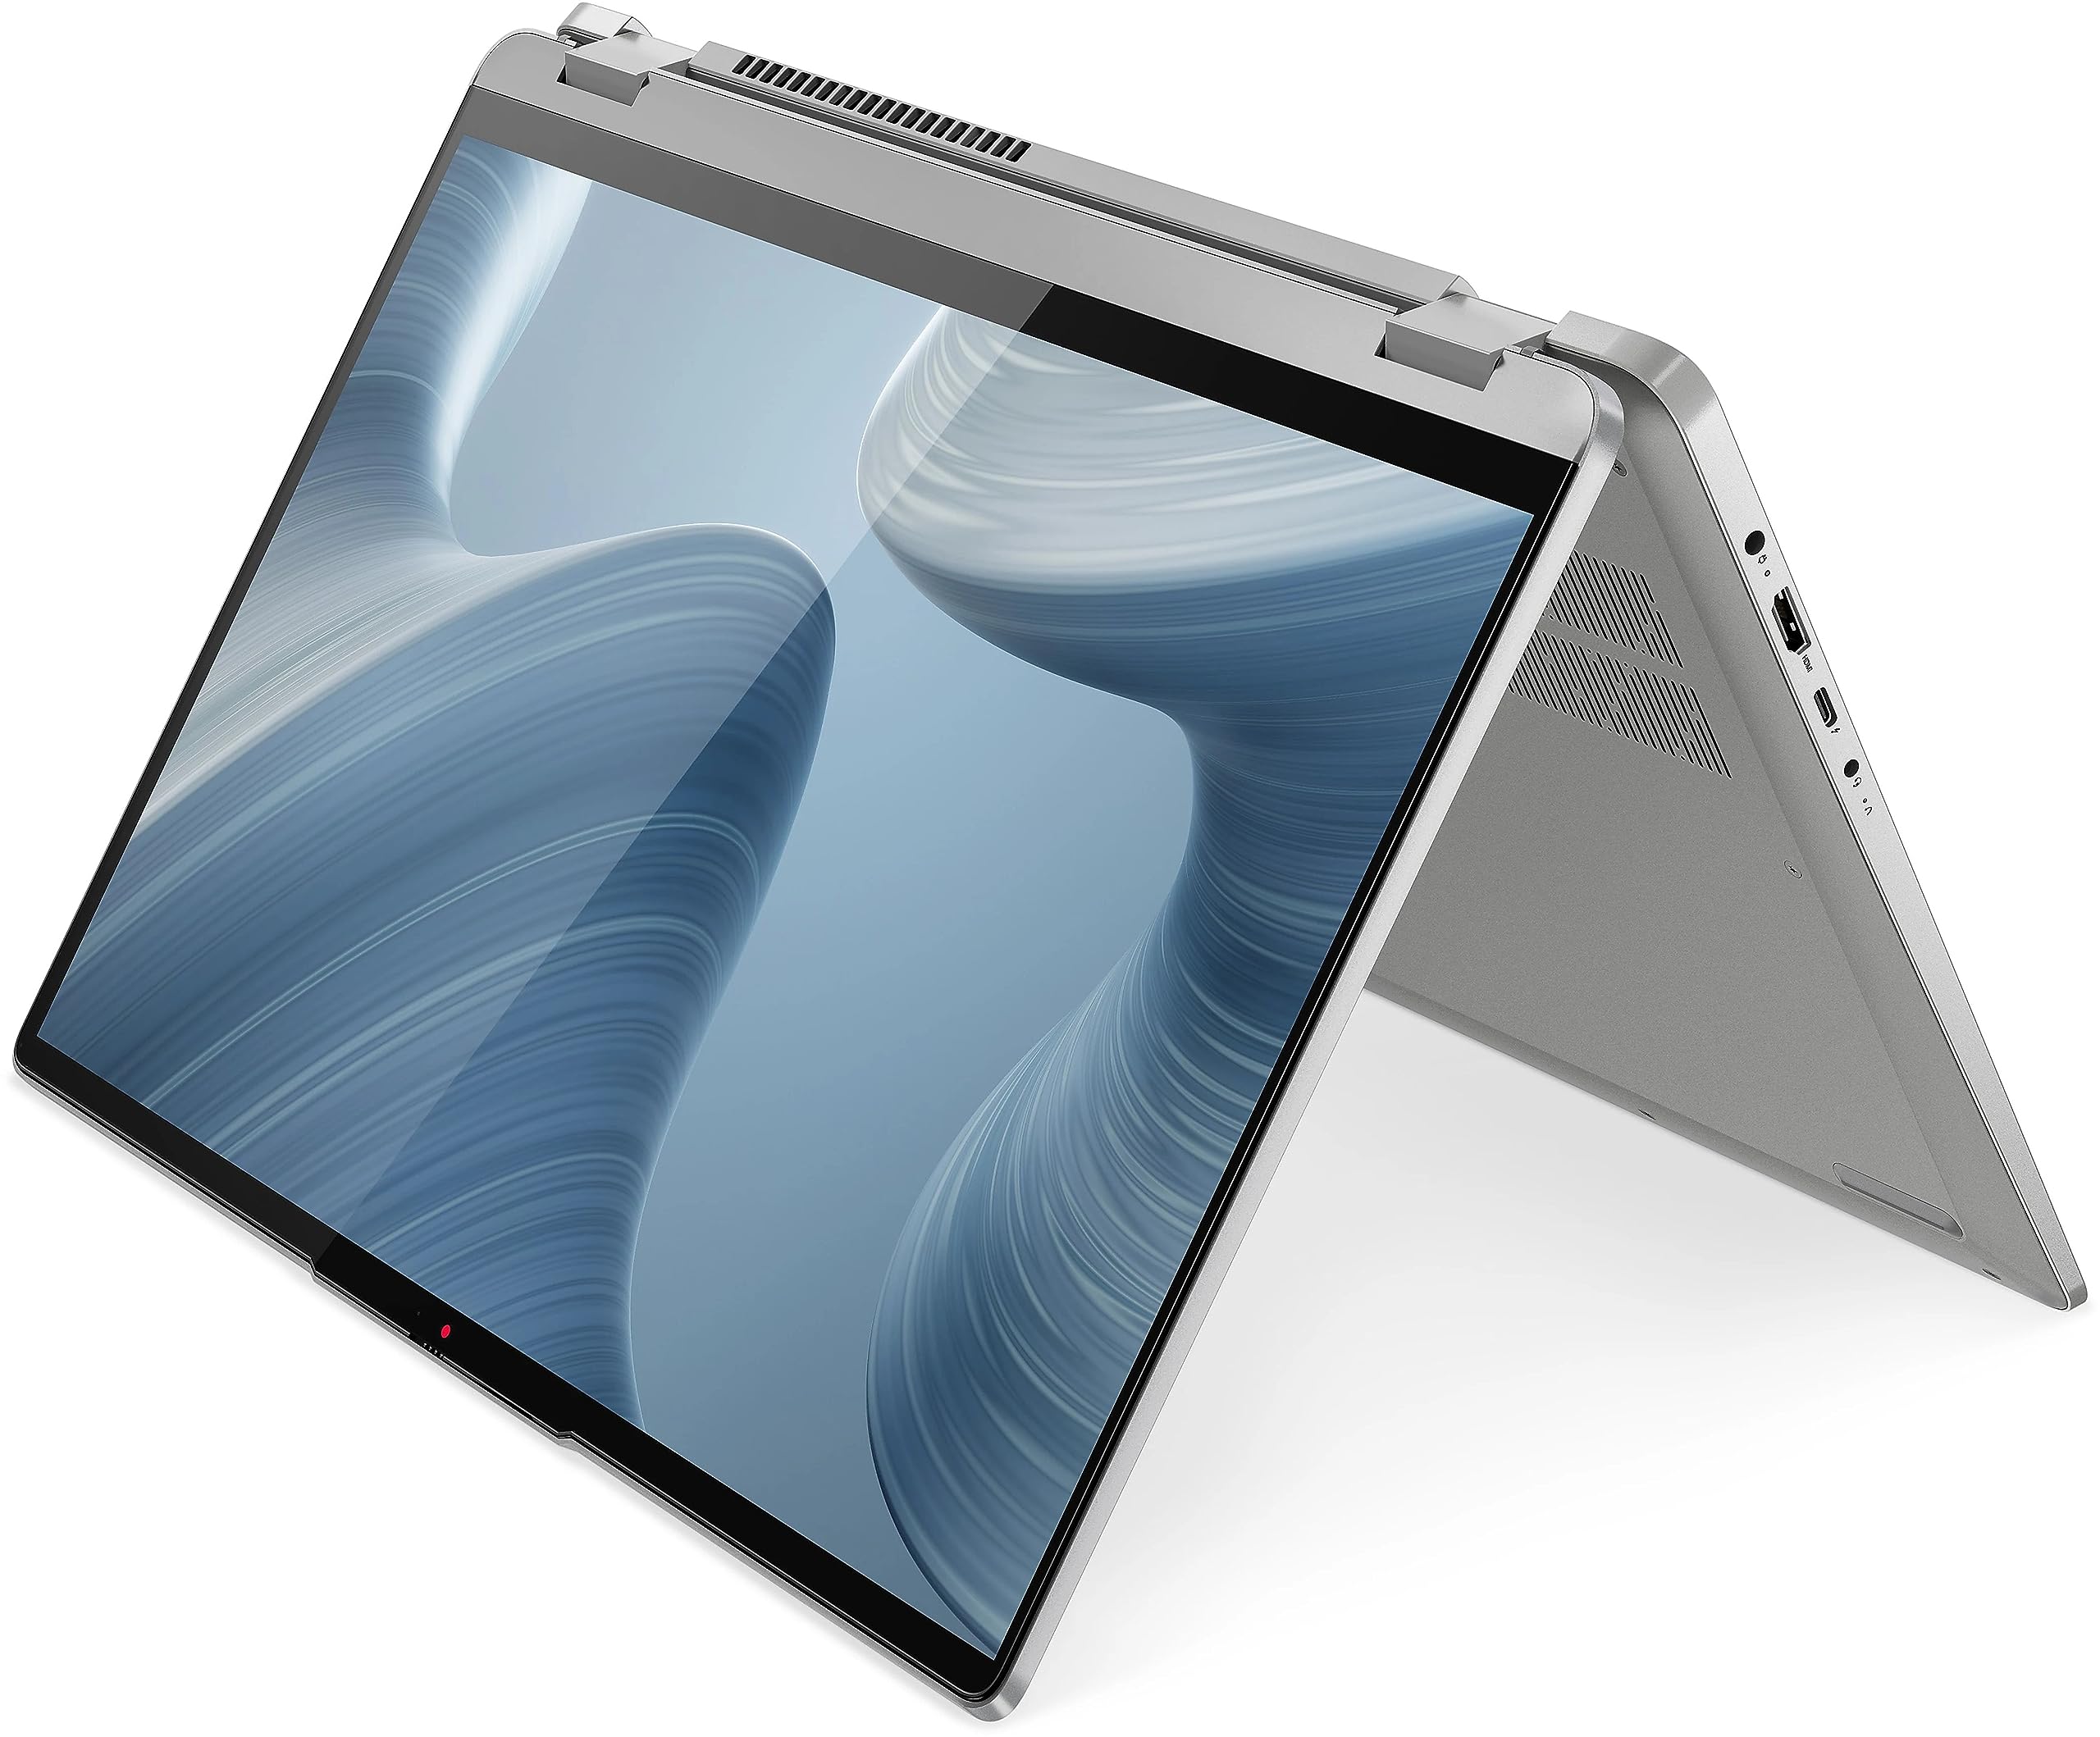 Lenovo Flex 5 2-in-1 16in WUXGA 2-in-1 Touchscreen Laptop AMD Ryzen 7 Octa-core (8 Core) up to 4.3 GHz 16GB DDR4 512GB SSD WiFi + BT Backlit Keyboard HDMI W11 iSlik Pen (Flex5 - Renewed)